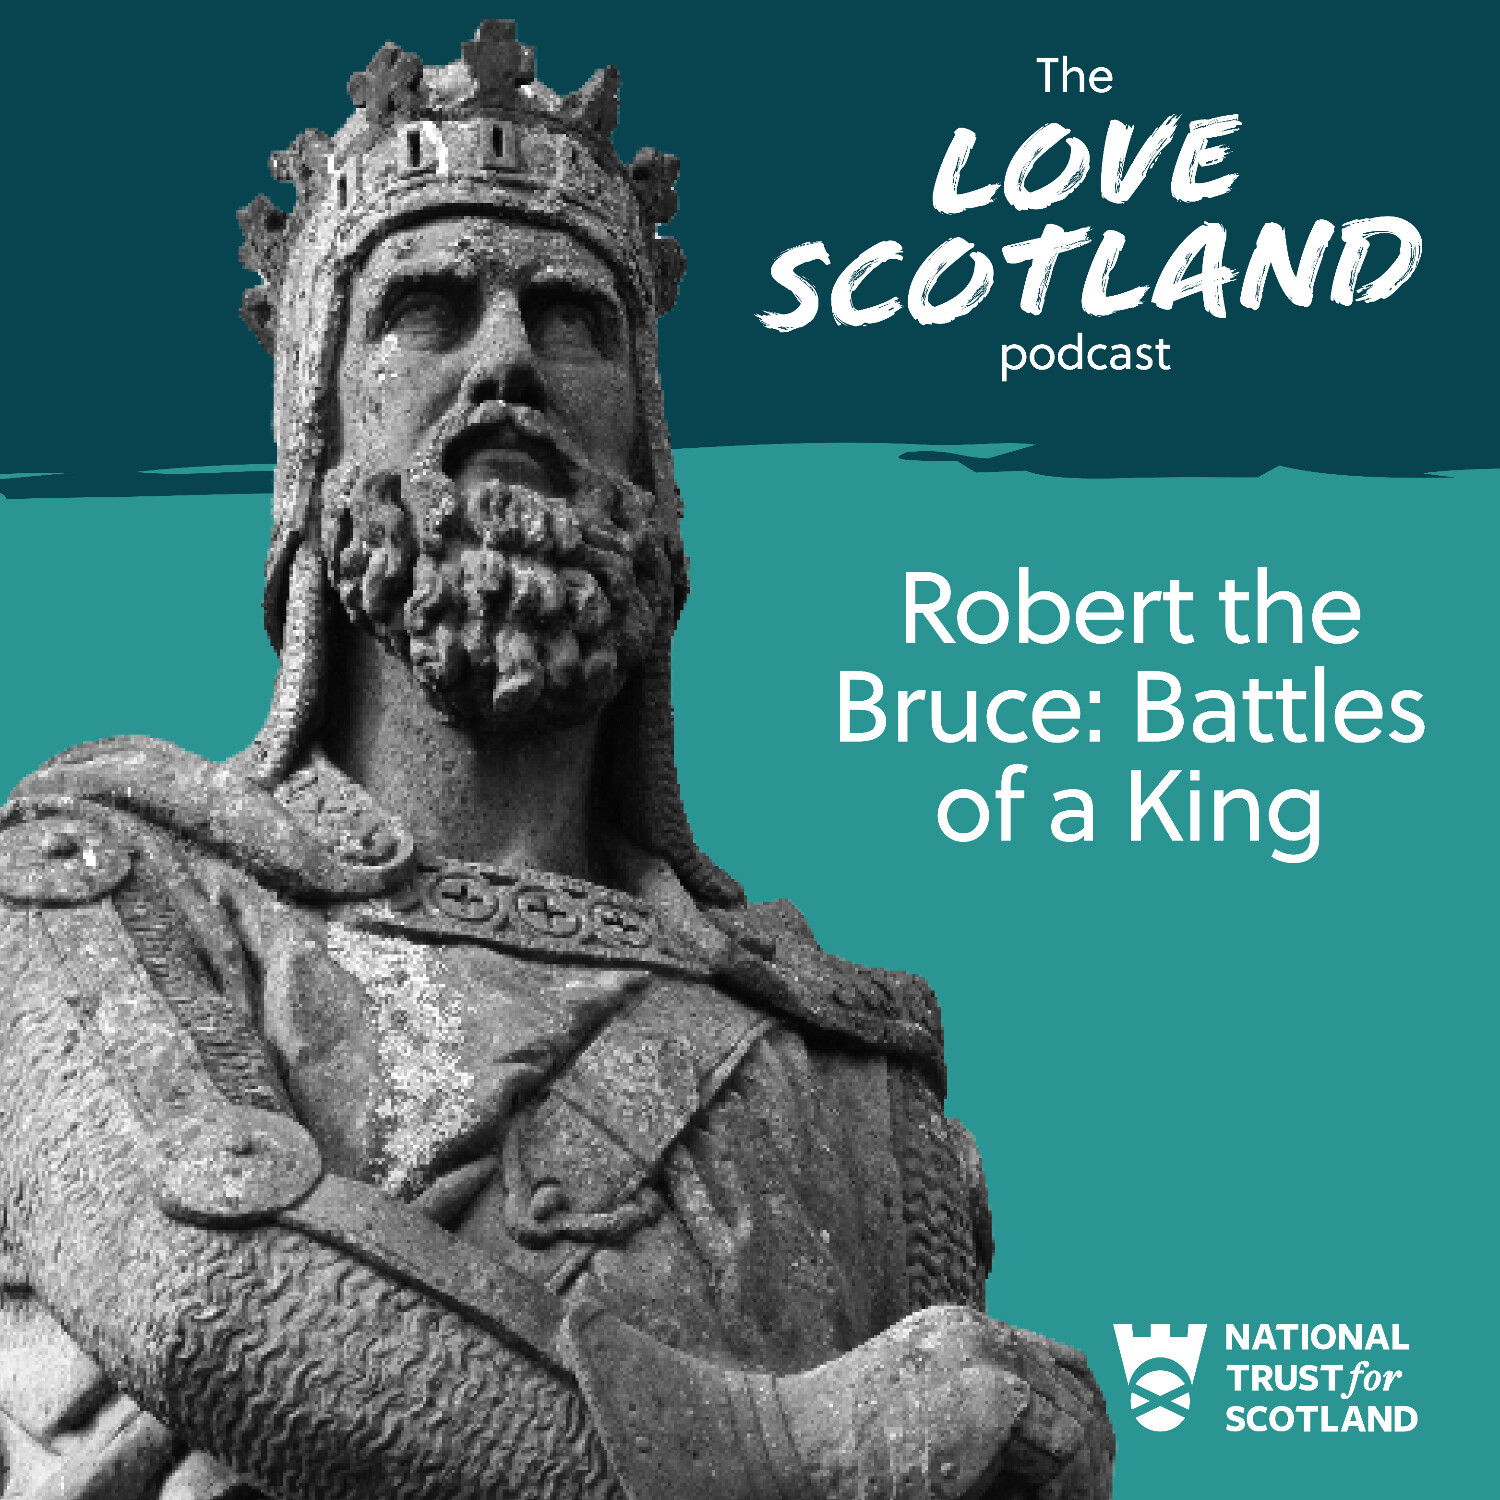 Robert the Bruce: Battles of a King